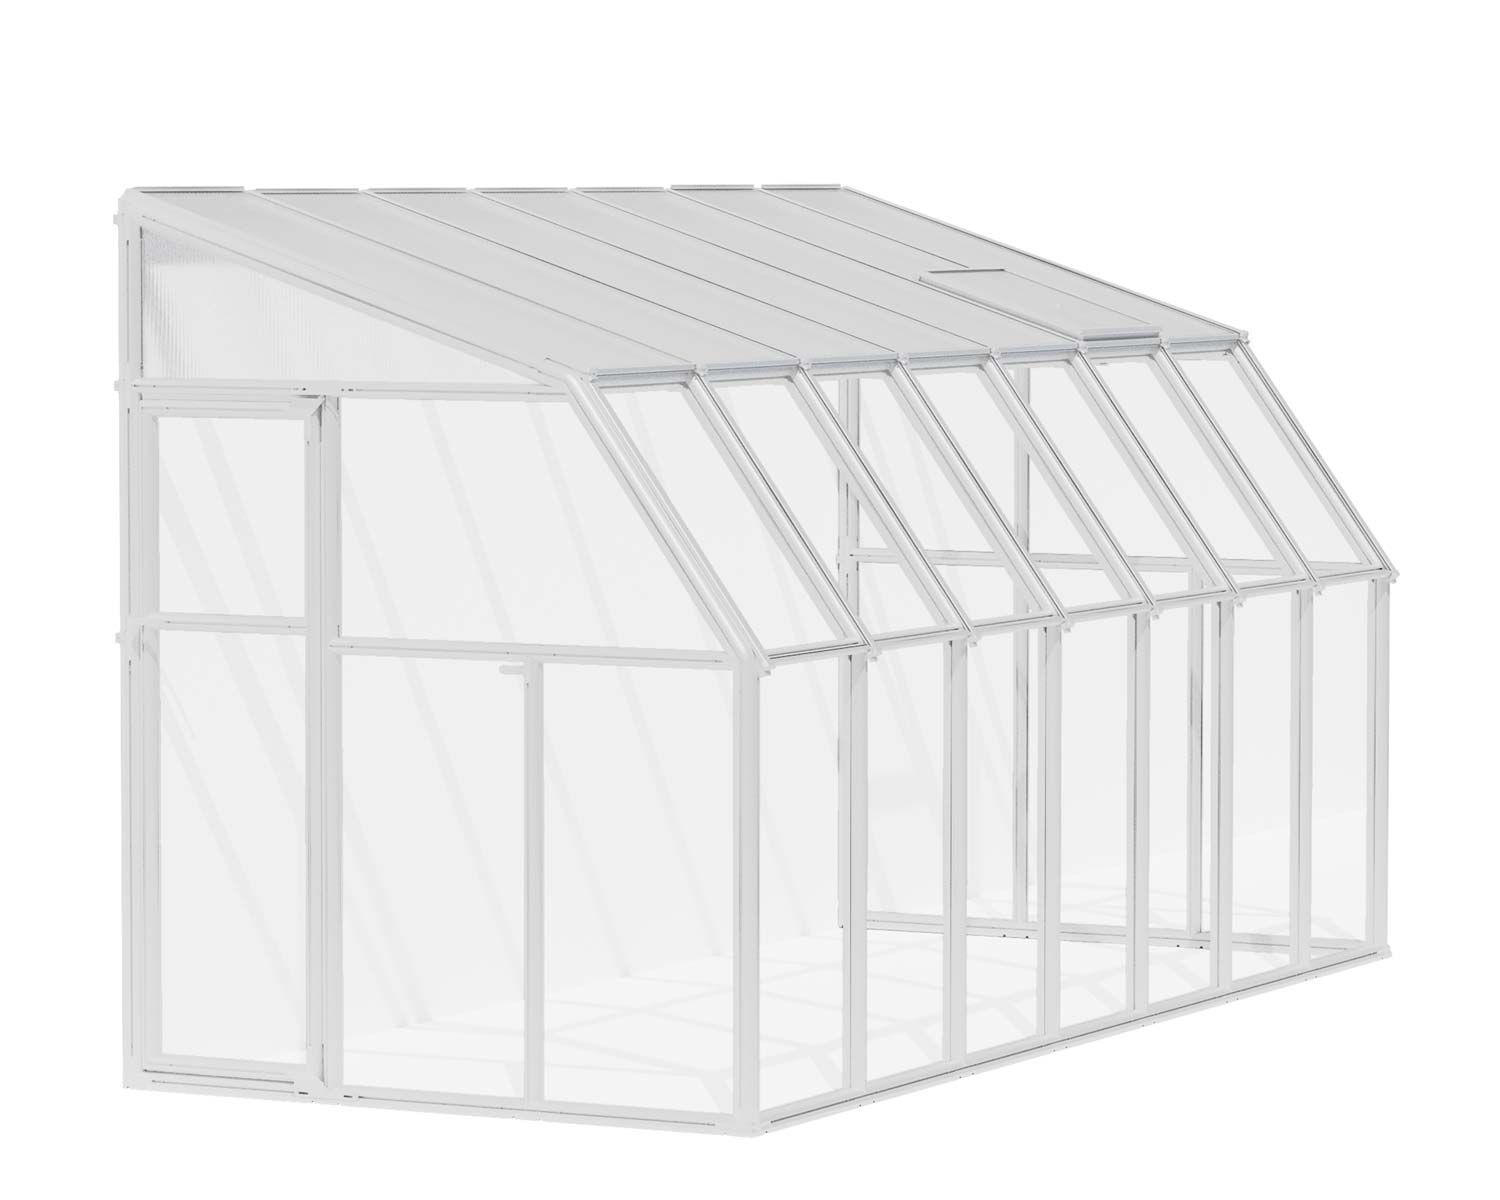 Solarium SunRoom Kit 6 ft. x 14 ft. White Structure & Hybrid Glazing